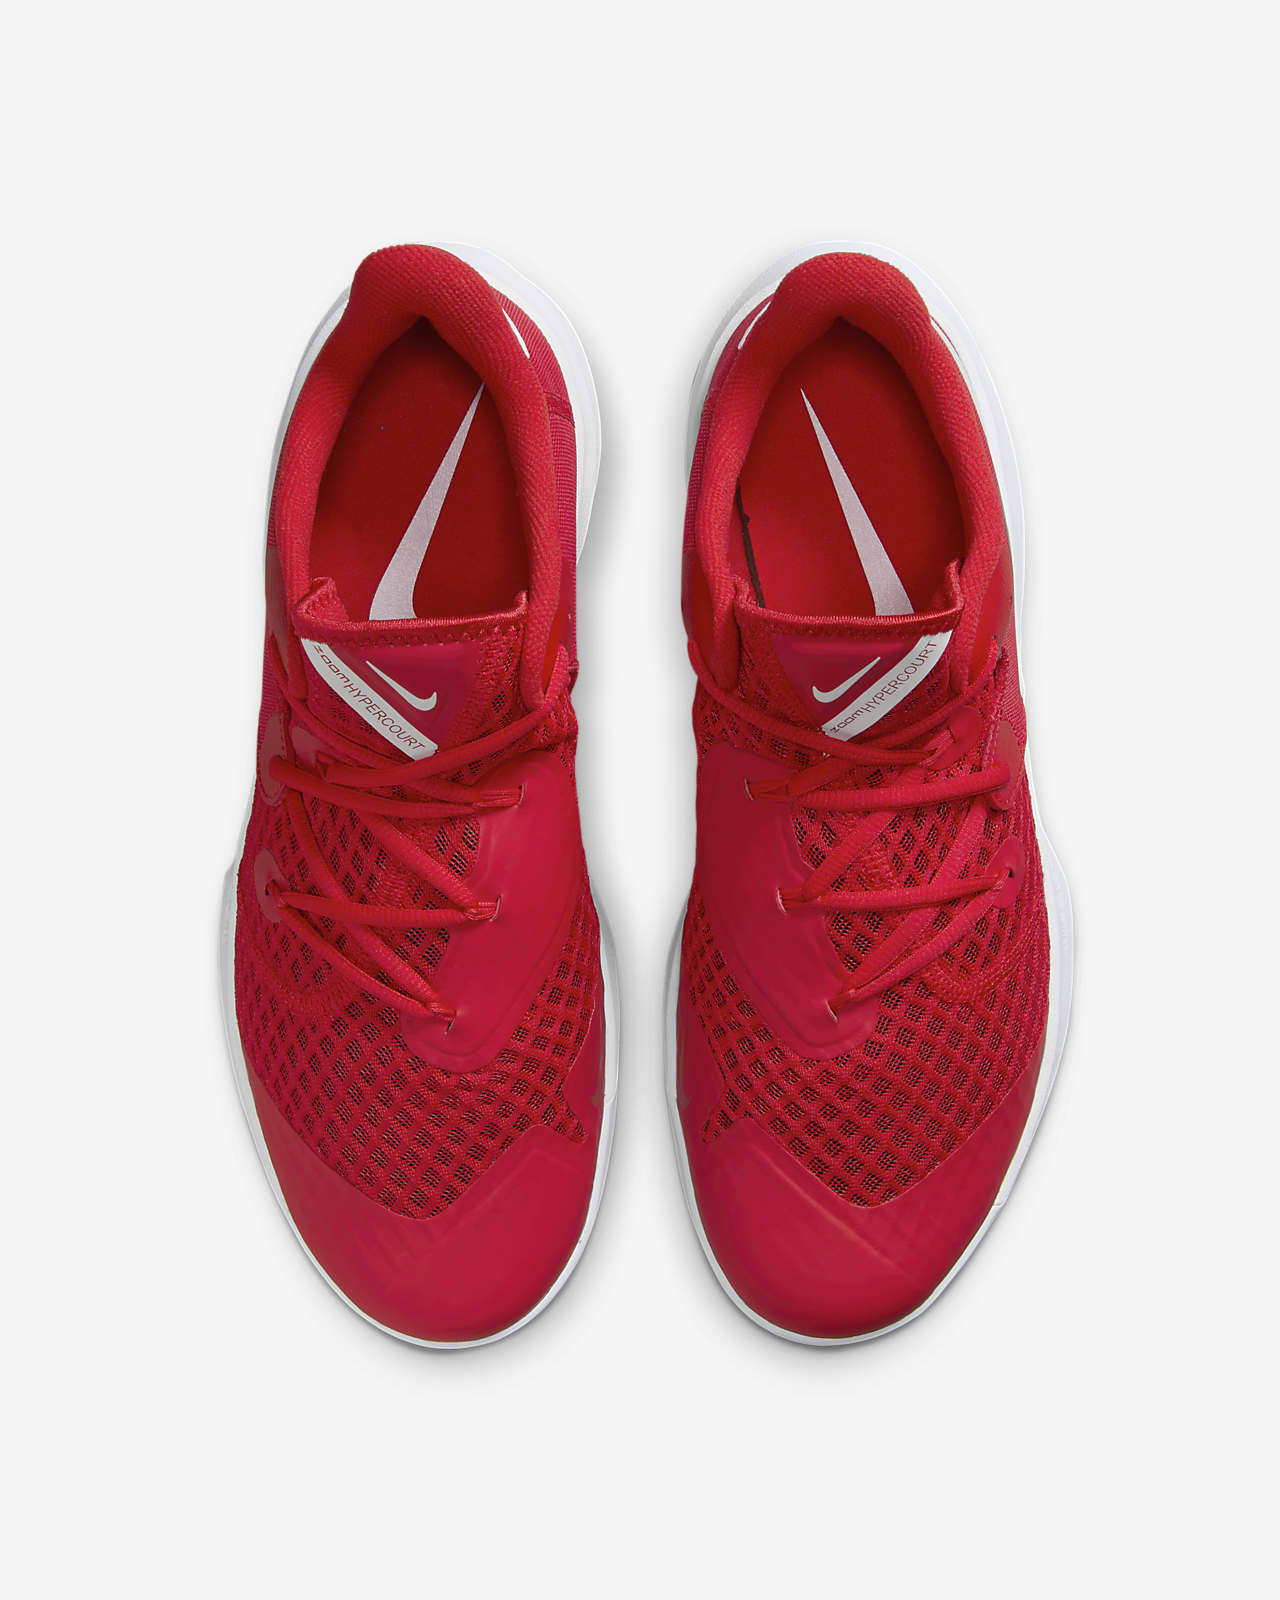 Zapatillas de balonmano Nike Zoom Hyperspeed Court SE - Nike - Otras marcas  - Zapatillas